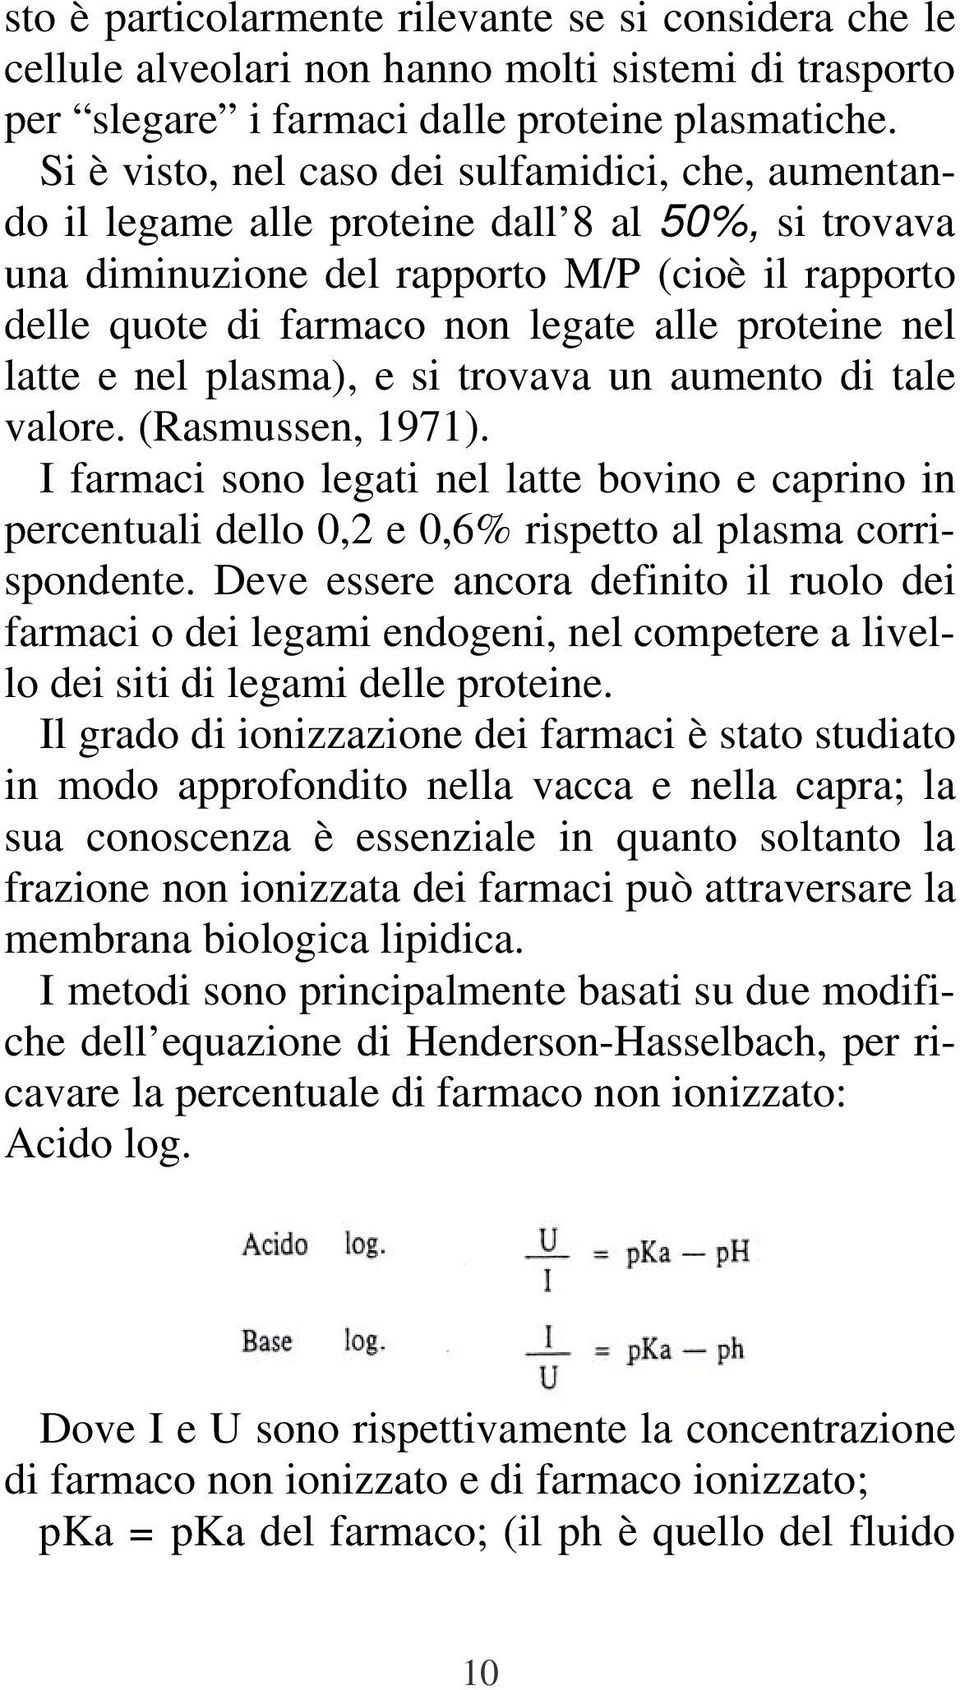 proteine nel latte e nel plasma), e si trovava un aumento di tale valore. (Rasmussen, 1971).